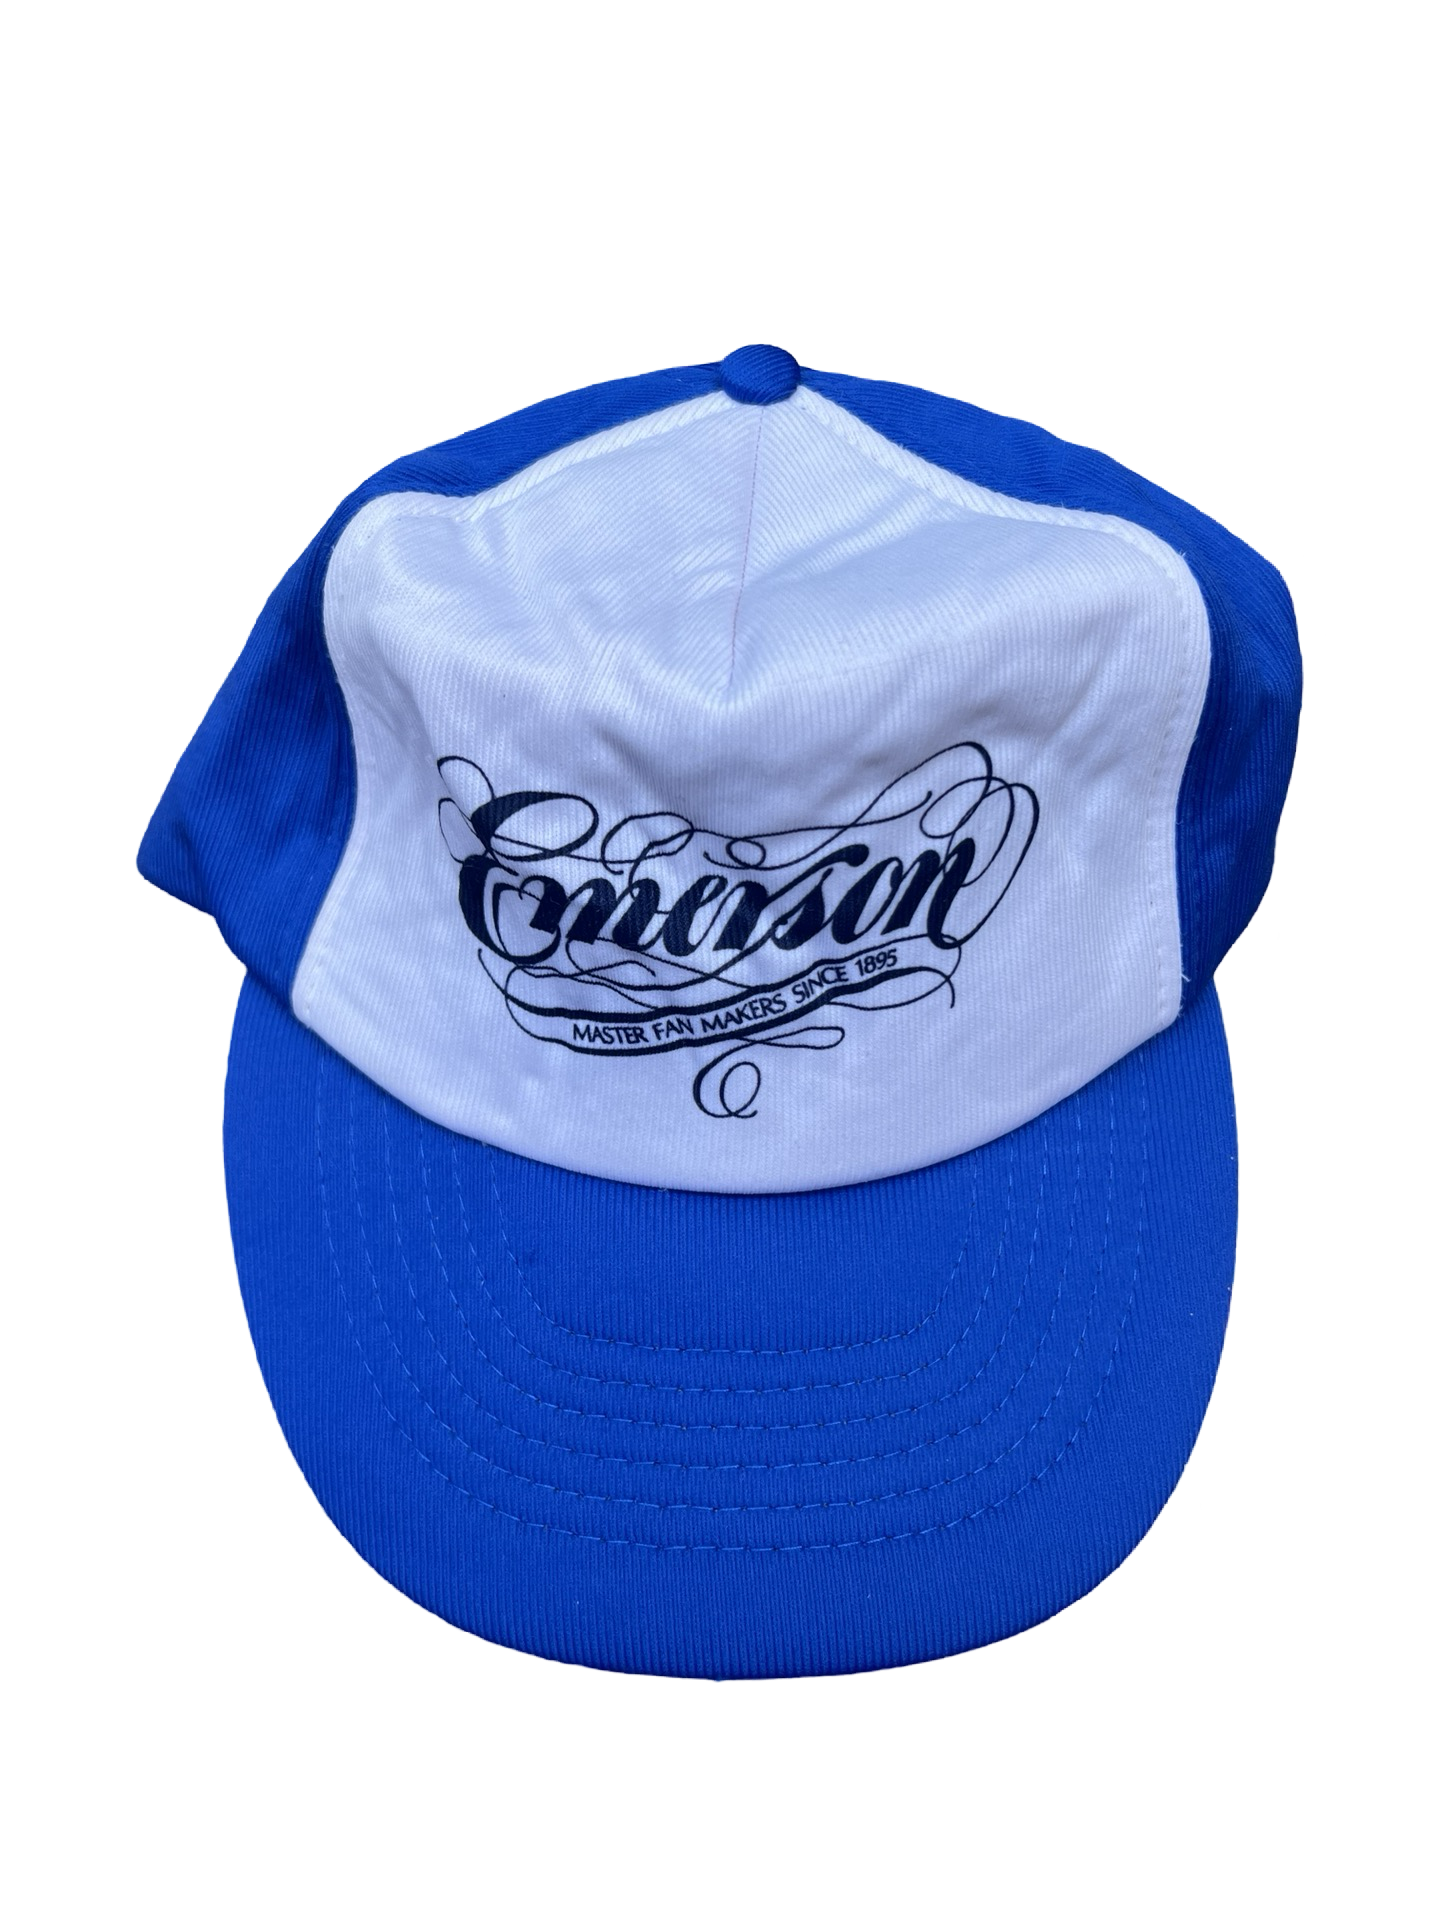 Emerson Fans Trucker Hat